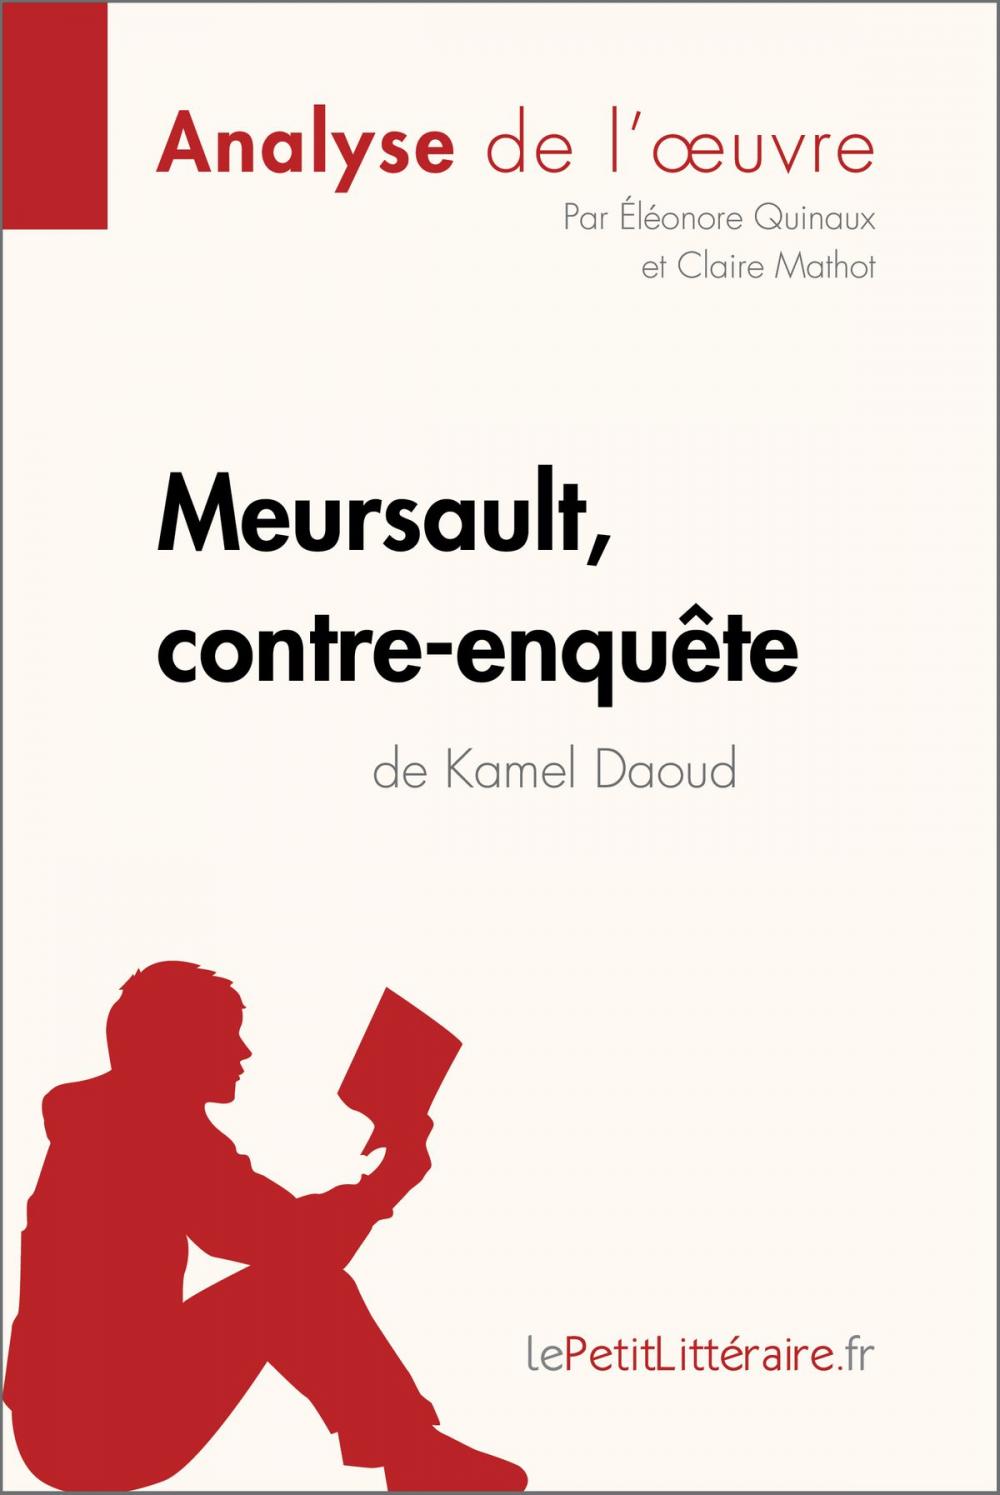 Big bigCover of Meursault, contre-enquête de Kamel Daoud (Analyse de l'œuvre)